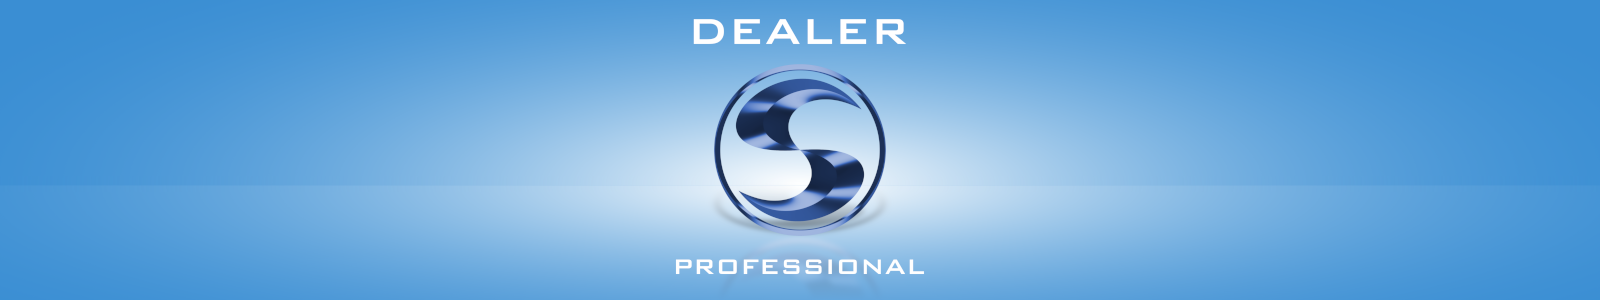 Dealer Professional - program dla sprzedawców okien, drzwi i rolet